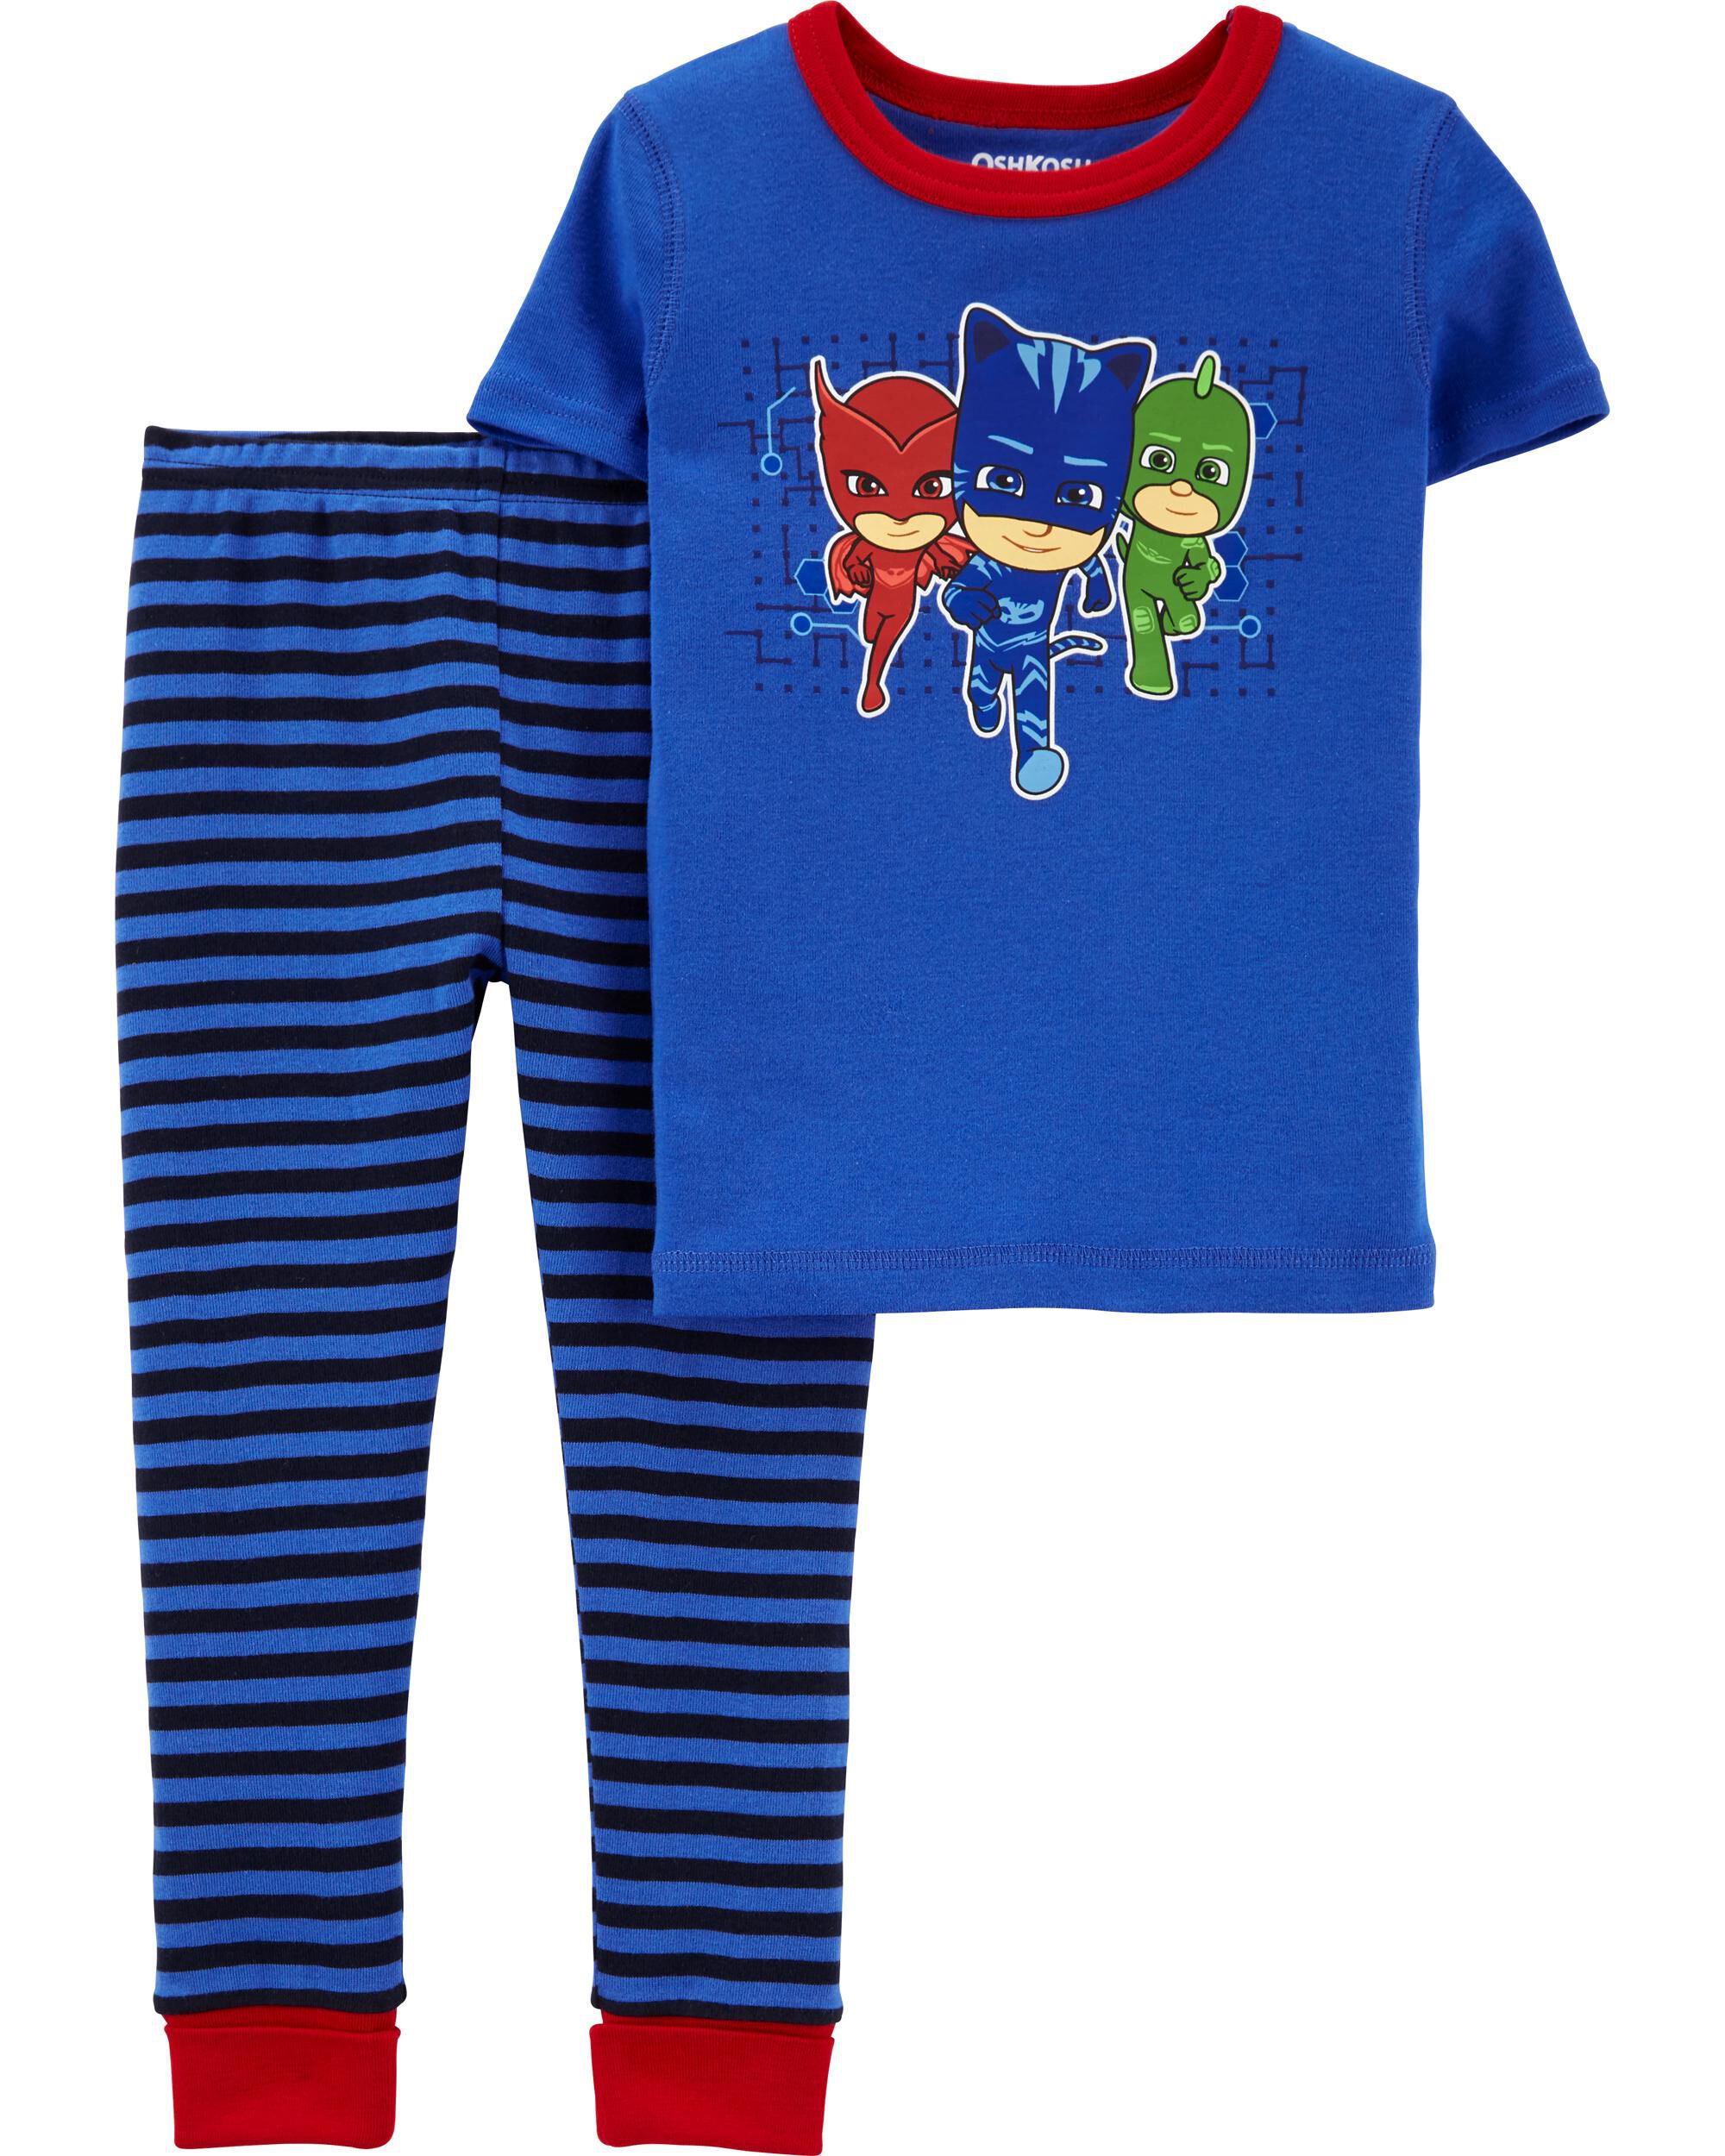 Pj Masks Boys 2-Piece Sleepwear Soft /& Cozy Kids Blue Pajama Set